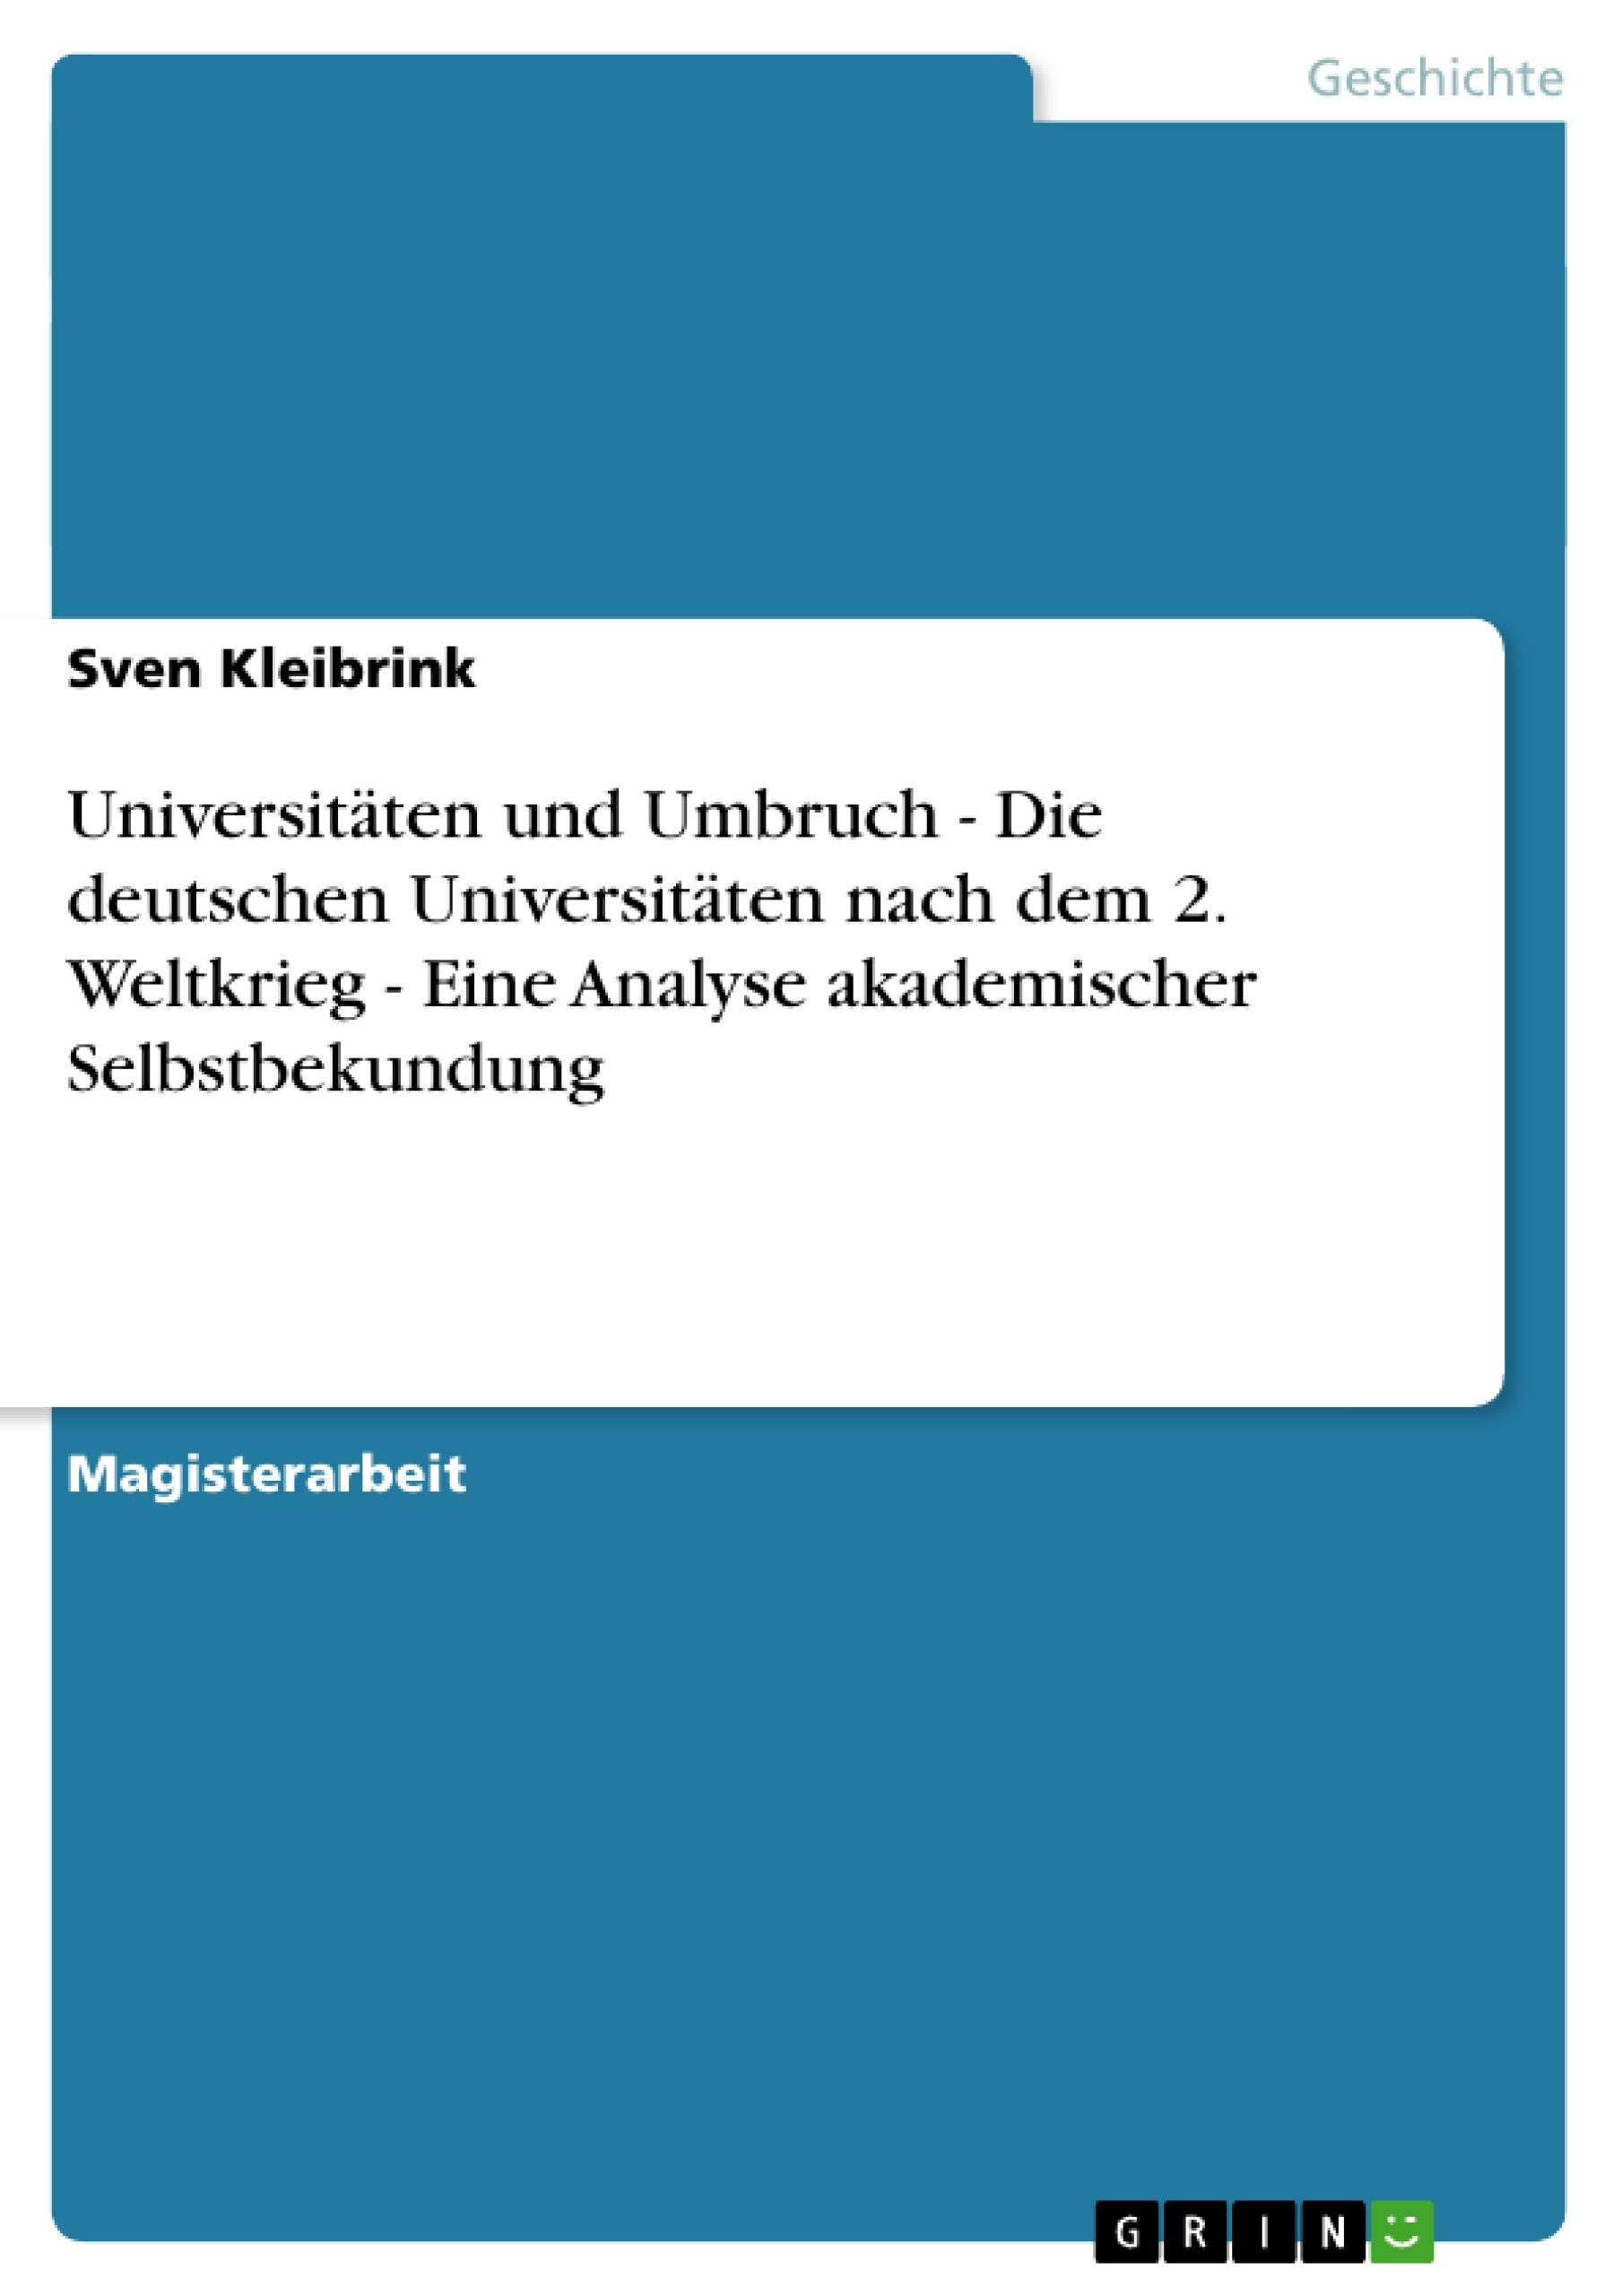 Titel: Universitäten und Umbruch - Die deutschen Universitäten nach dem 2. Weltkrieg - Eine Analyse akademischer Selbstbekundung